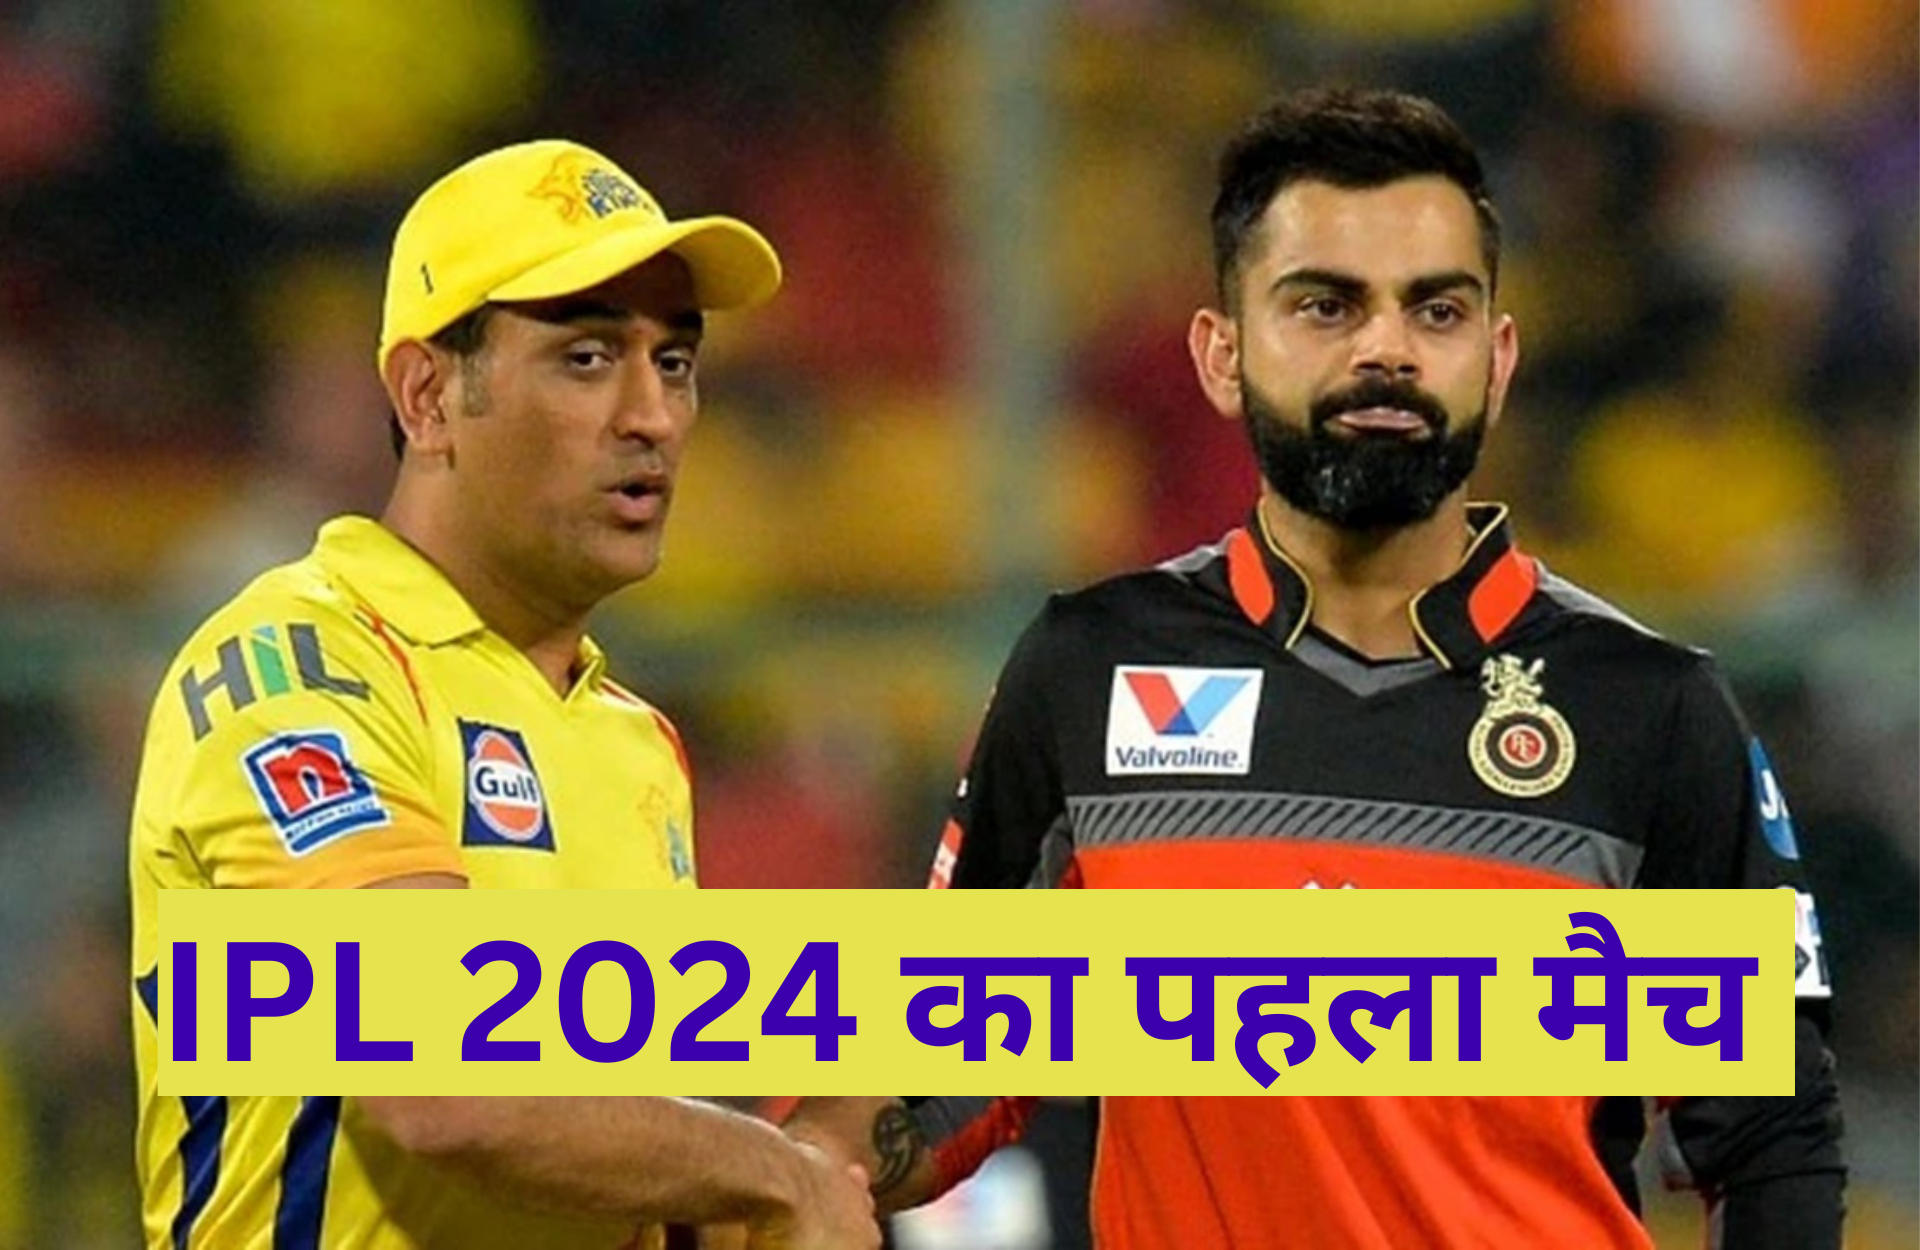 IPL 2024 का पहला मैच: IPL का पहला मैच किस किसके बीच होगा और ये मैच इतना खाश क्यों है